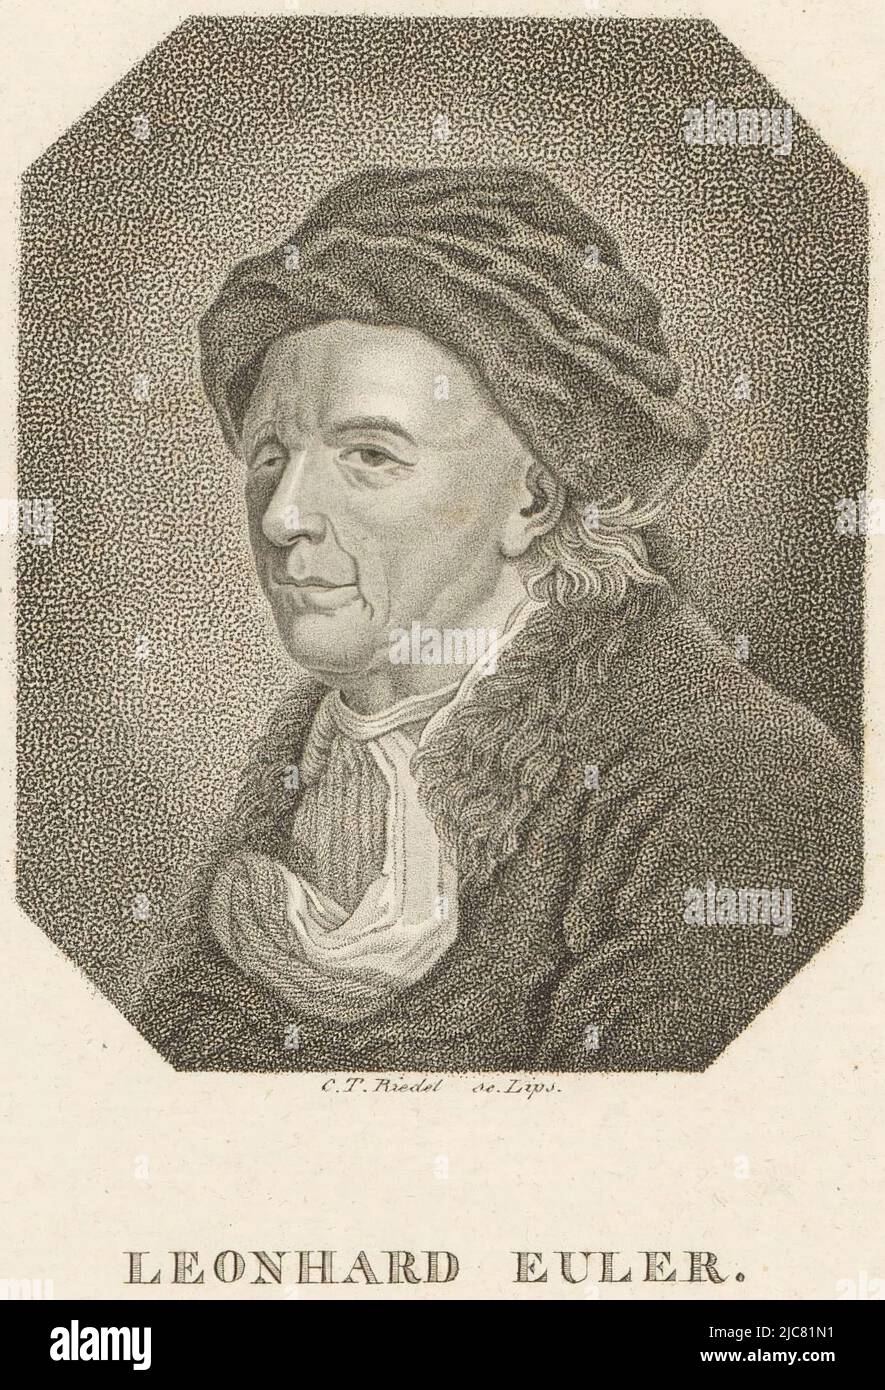 Ritratto di Leonhard Euler, tipografia: Karl Traugott Riedel, (menzionato sull'oggetto), editore: gebroeders Schumann, (menzionato sull'oggetto), Lipsia, 1779 - 1850, carta, incisione, h 185 mm - l 120 mm Foto Stock